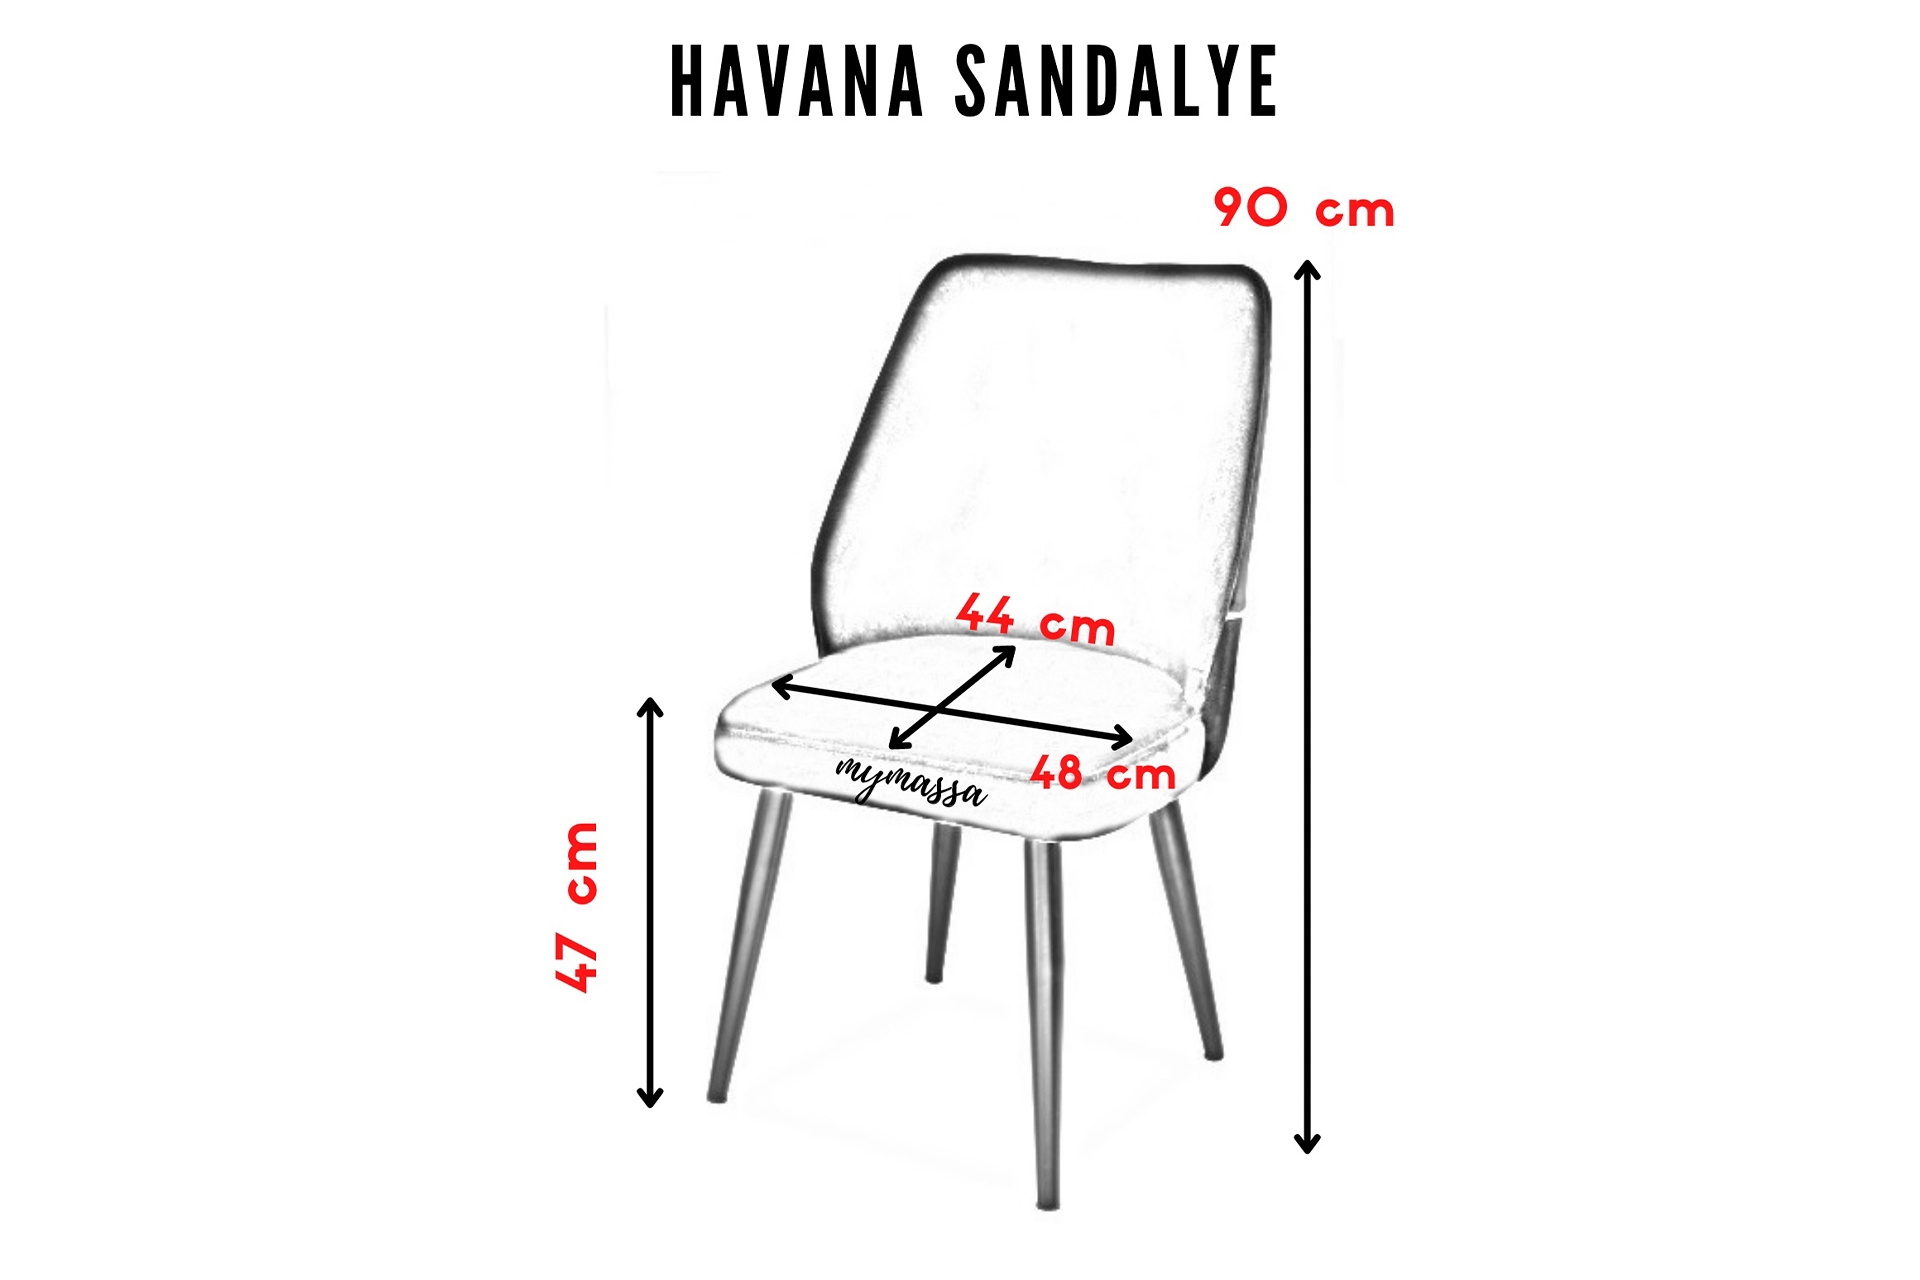 BABYFACE HAVANA SANDALYE- SİYAH